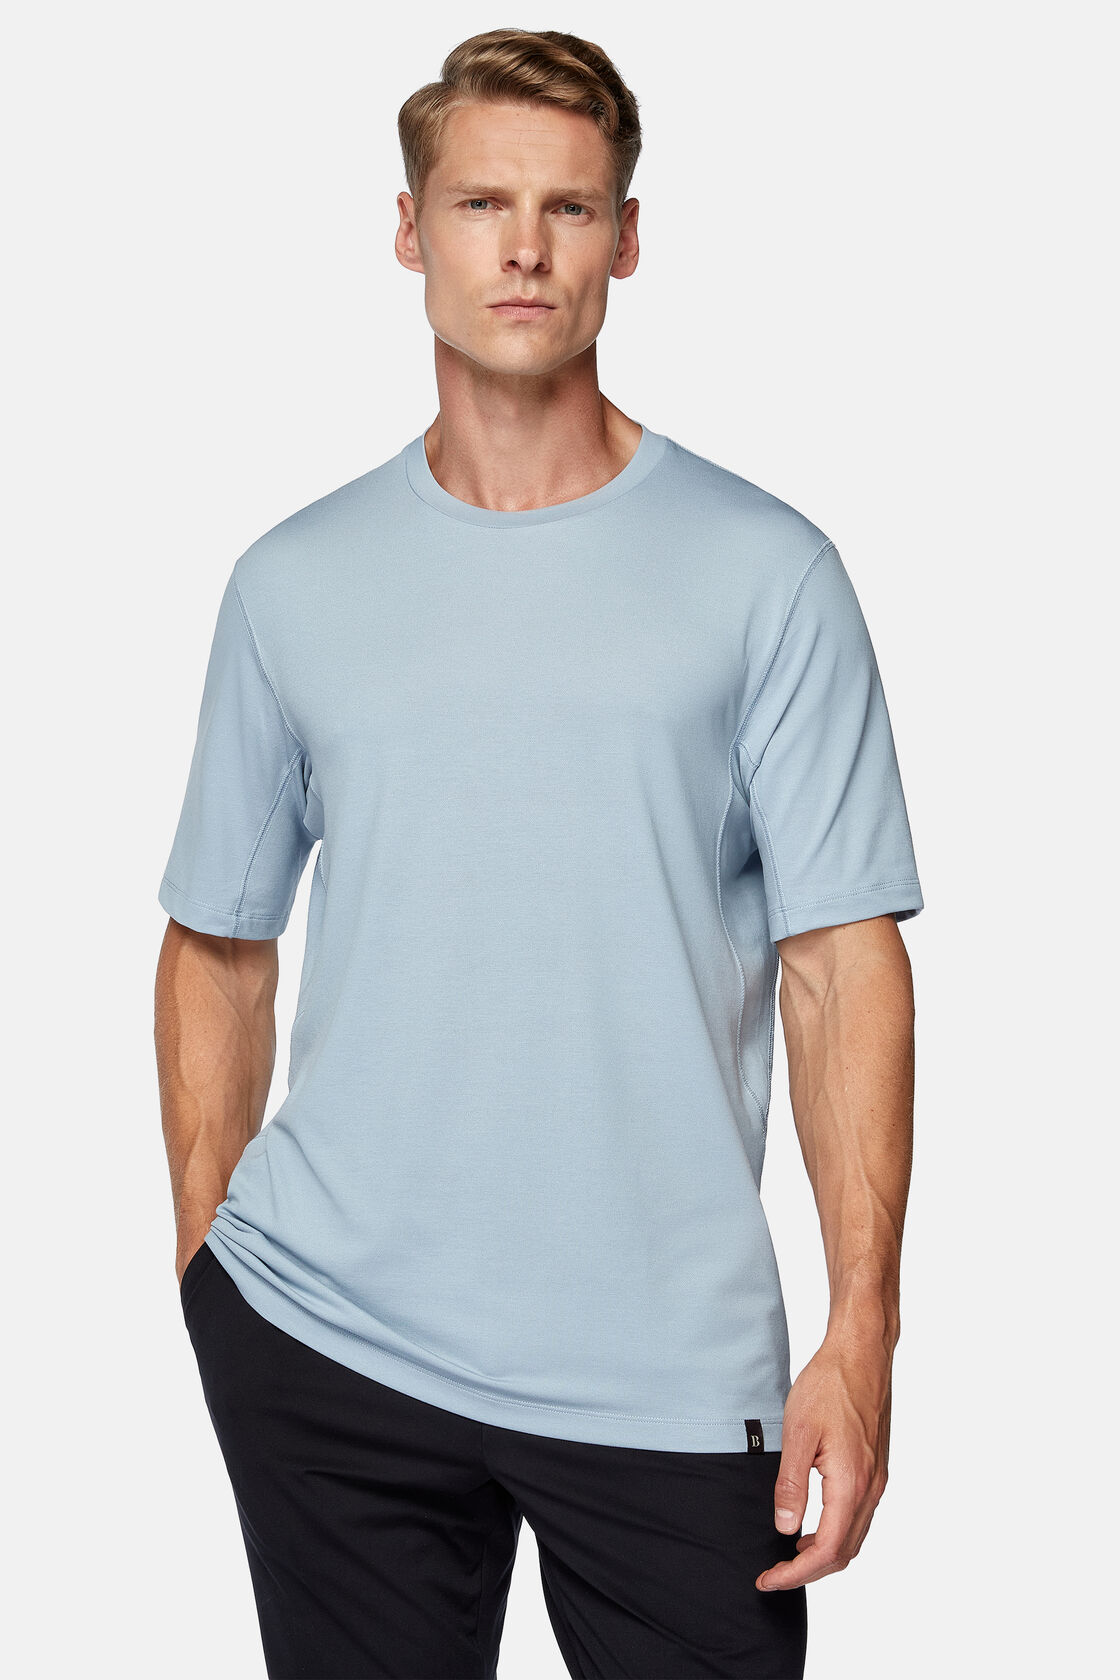 T-shirt En Piqué Performant, Bleu clair, hi-res